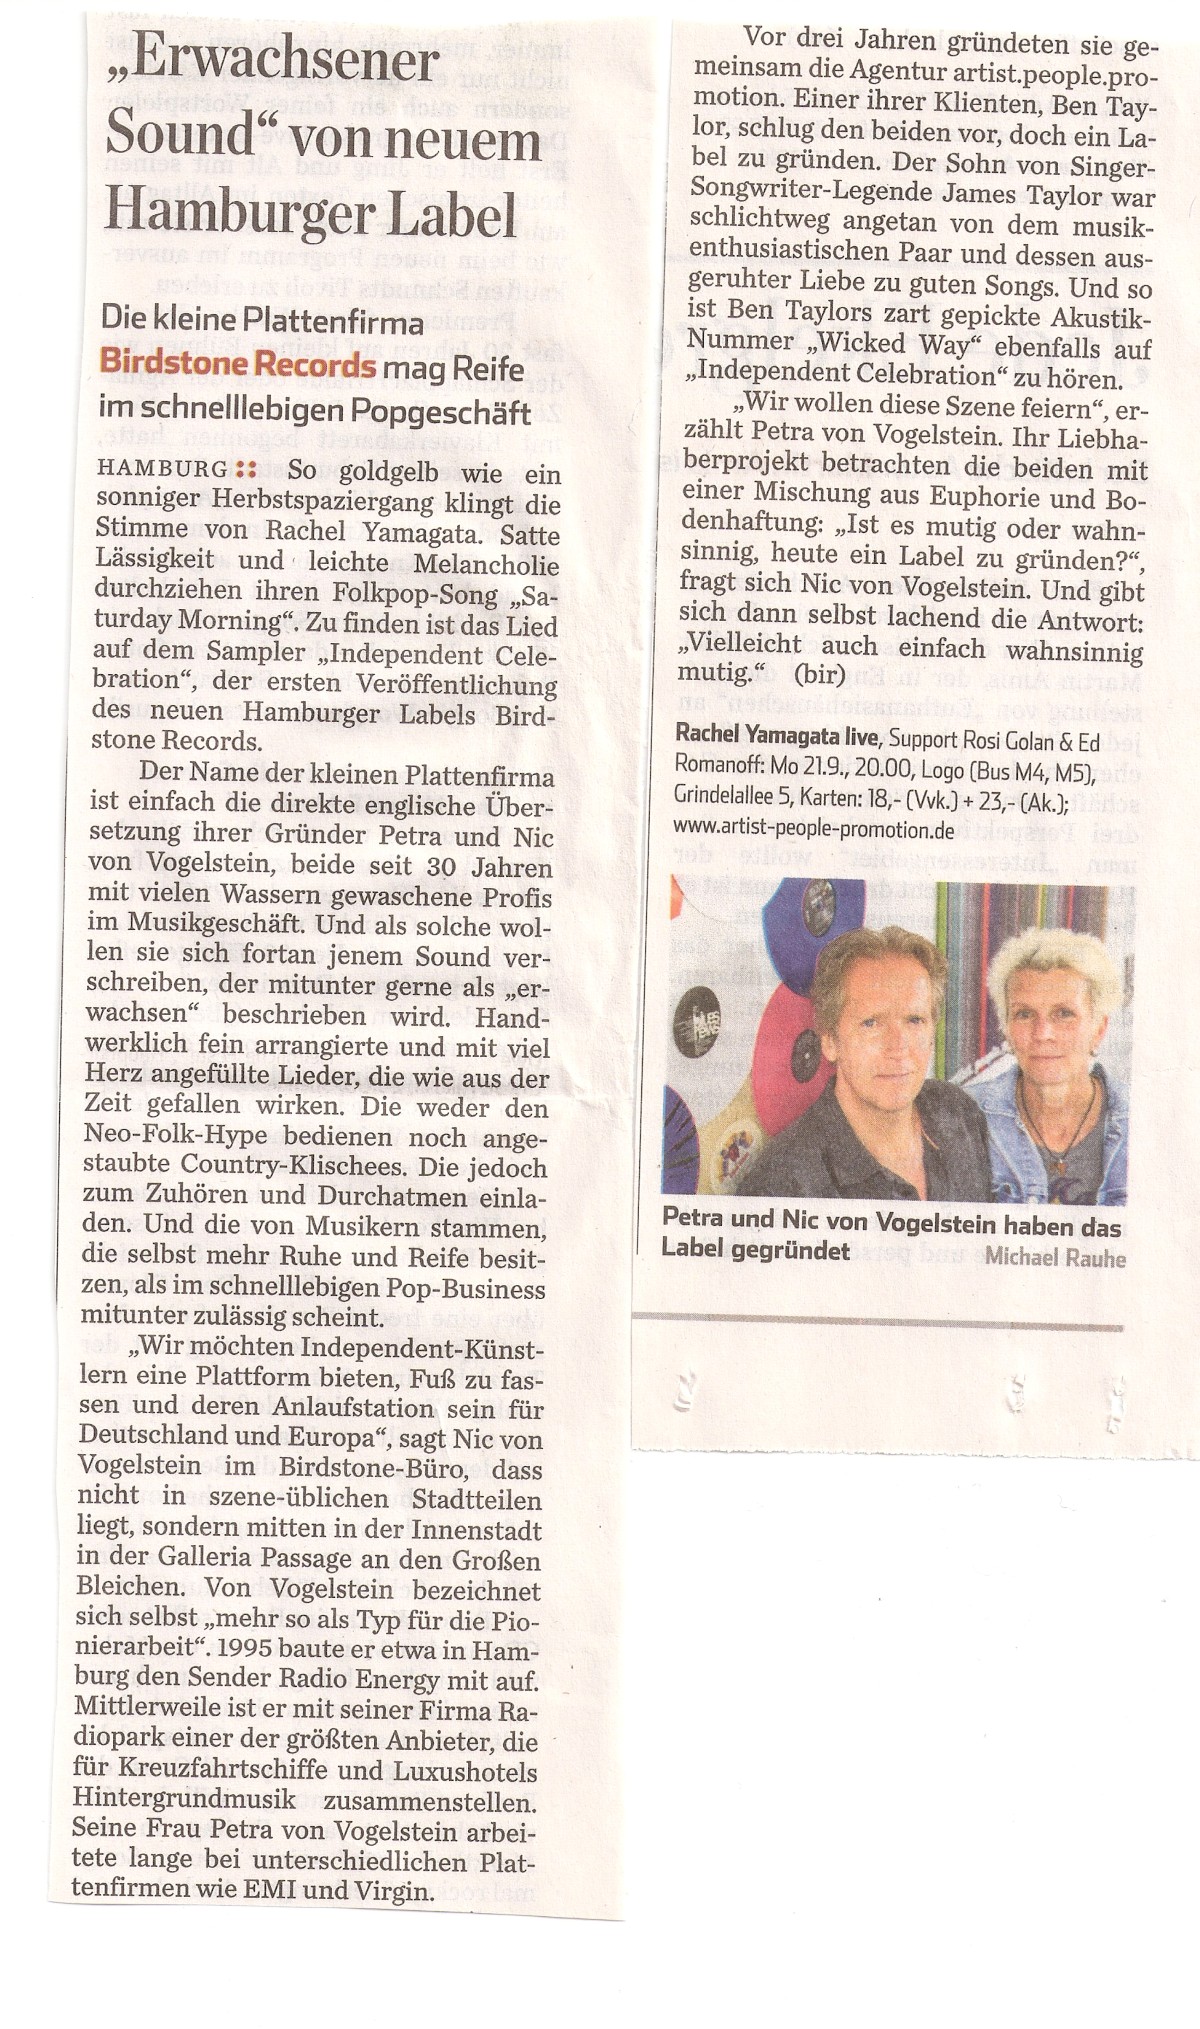 Birdstone Records, Hamburger Abendblatt, Sept 2015